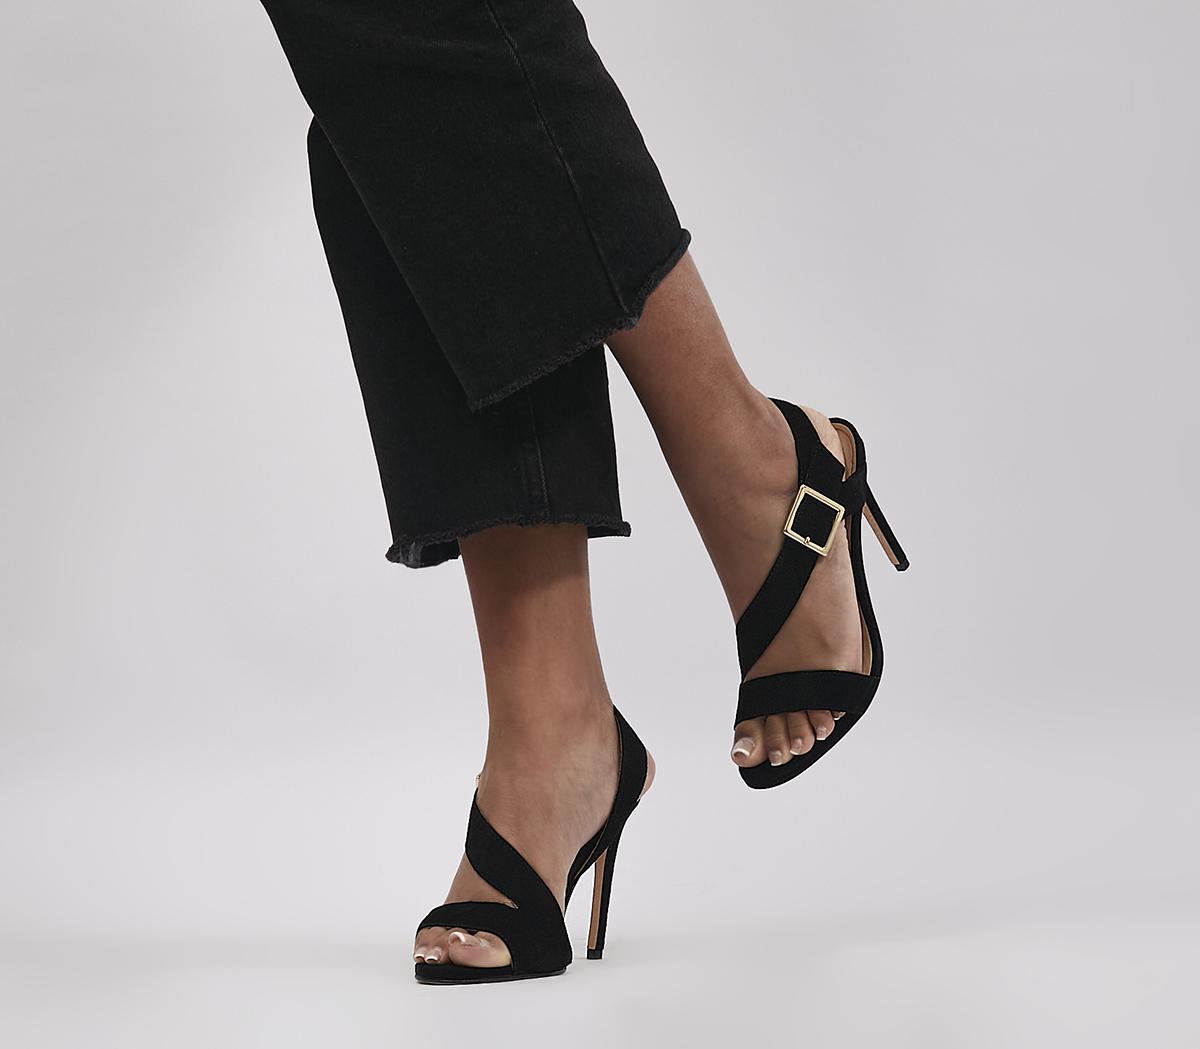 Heat Asymmetric Sandals Black Suede